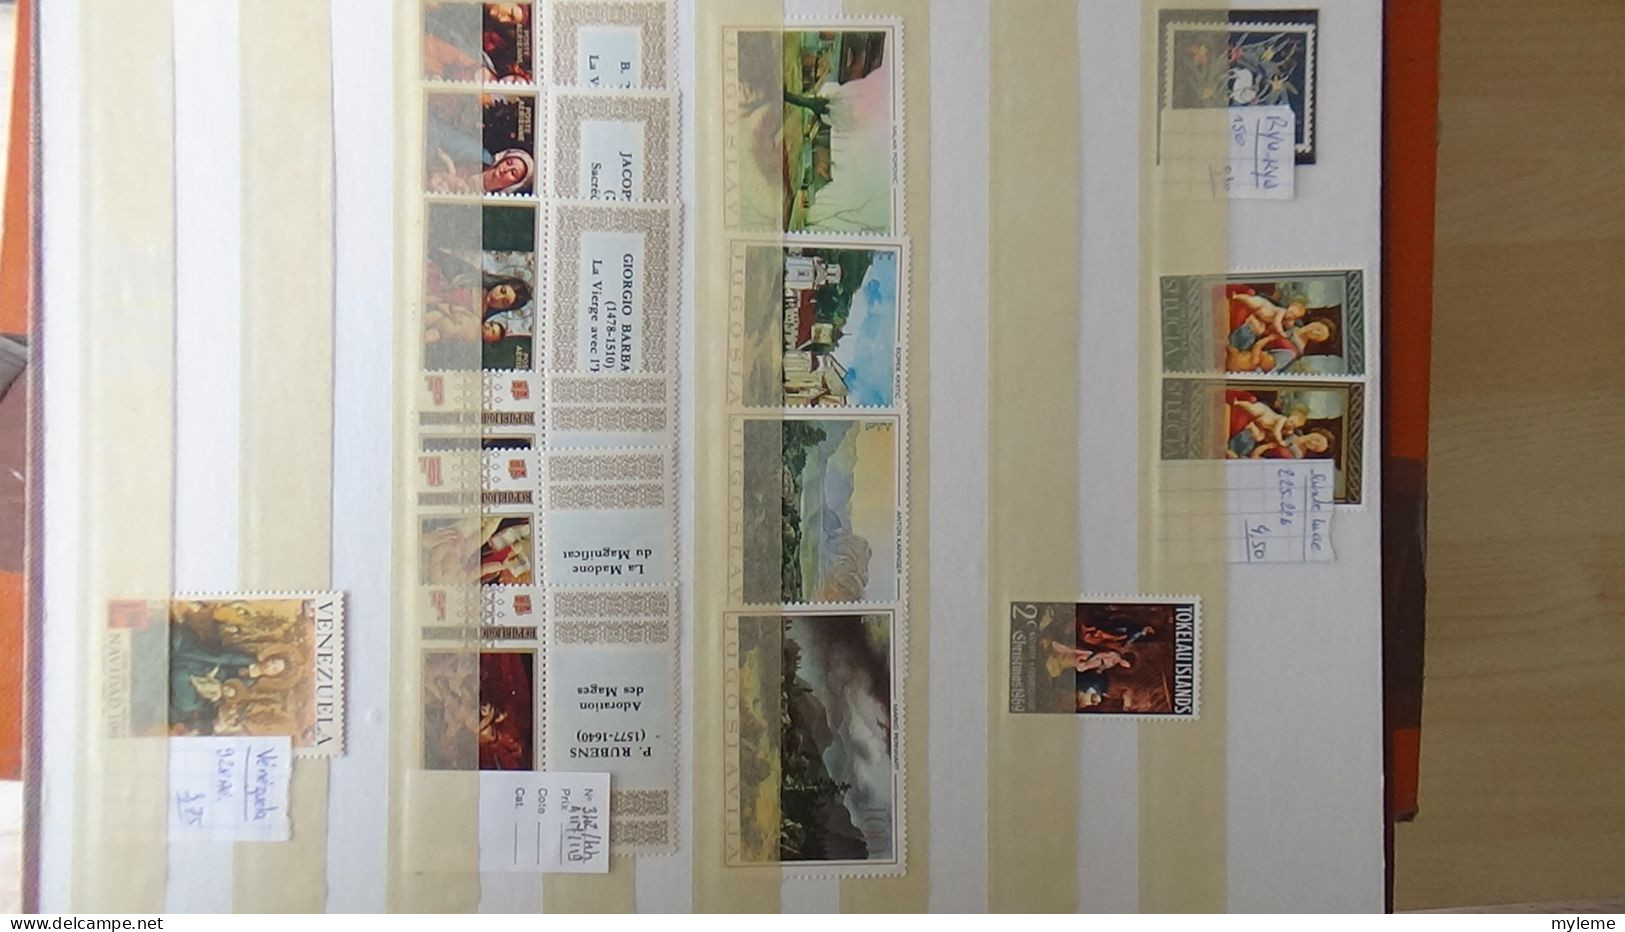 BF53 Bel ensemble de timbres de divers pays + plaquette de timbres **. A saisir !!!